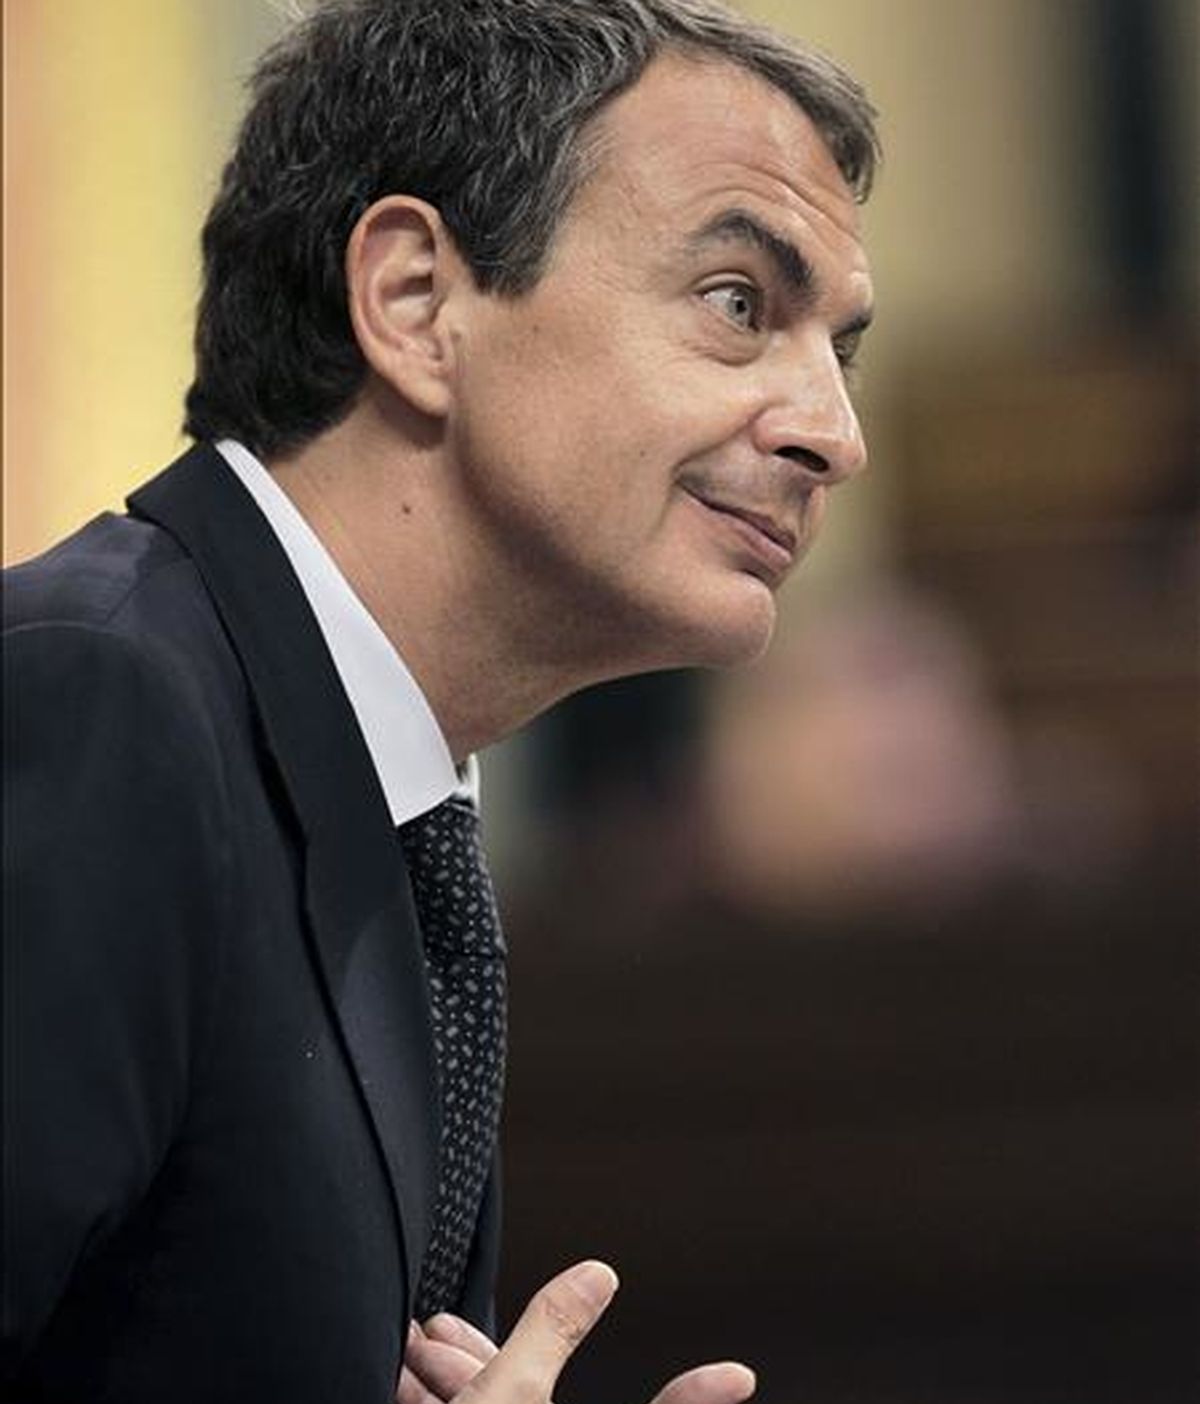 El presidente del Gobierno, José Luis Rodríguez Zapatero, durante el debate sobre el estado de la nación que se celebra hoy en el Congreso de los Diputados, en Madrid. EFE